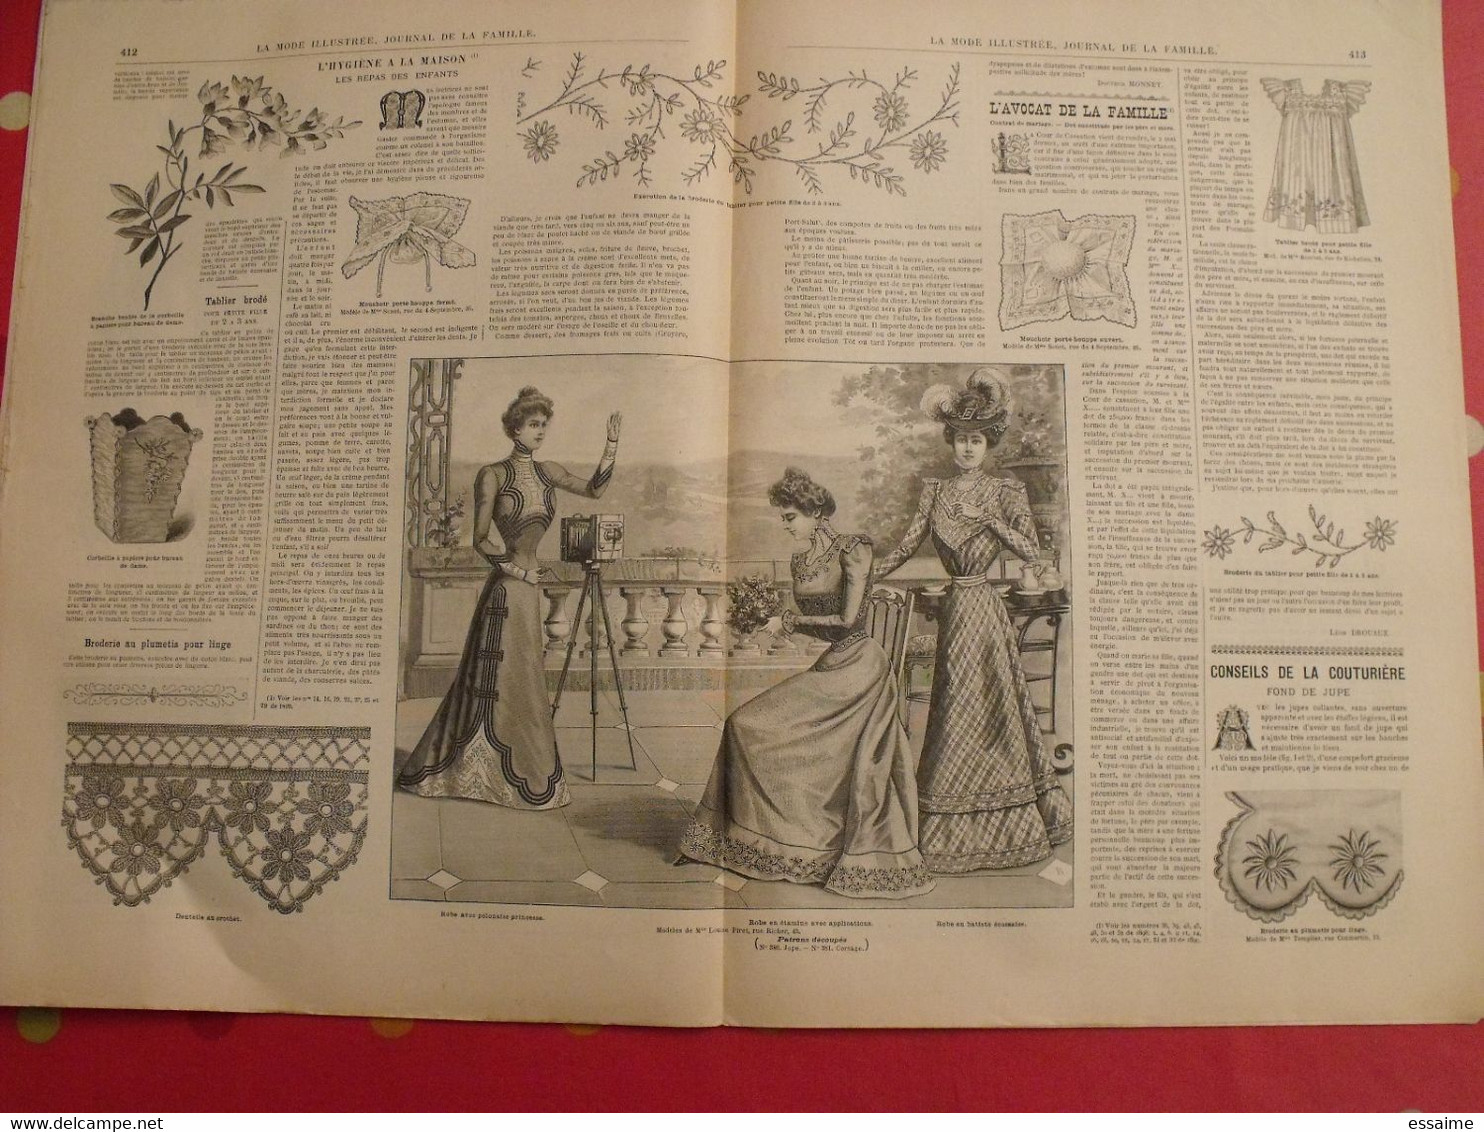 4 revues la mode illustrée, journal de la famille.  n° 33,34,36,37 de 1899. couverture en couleur. jolies gravures